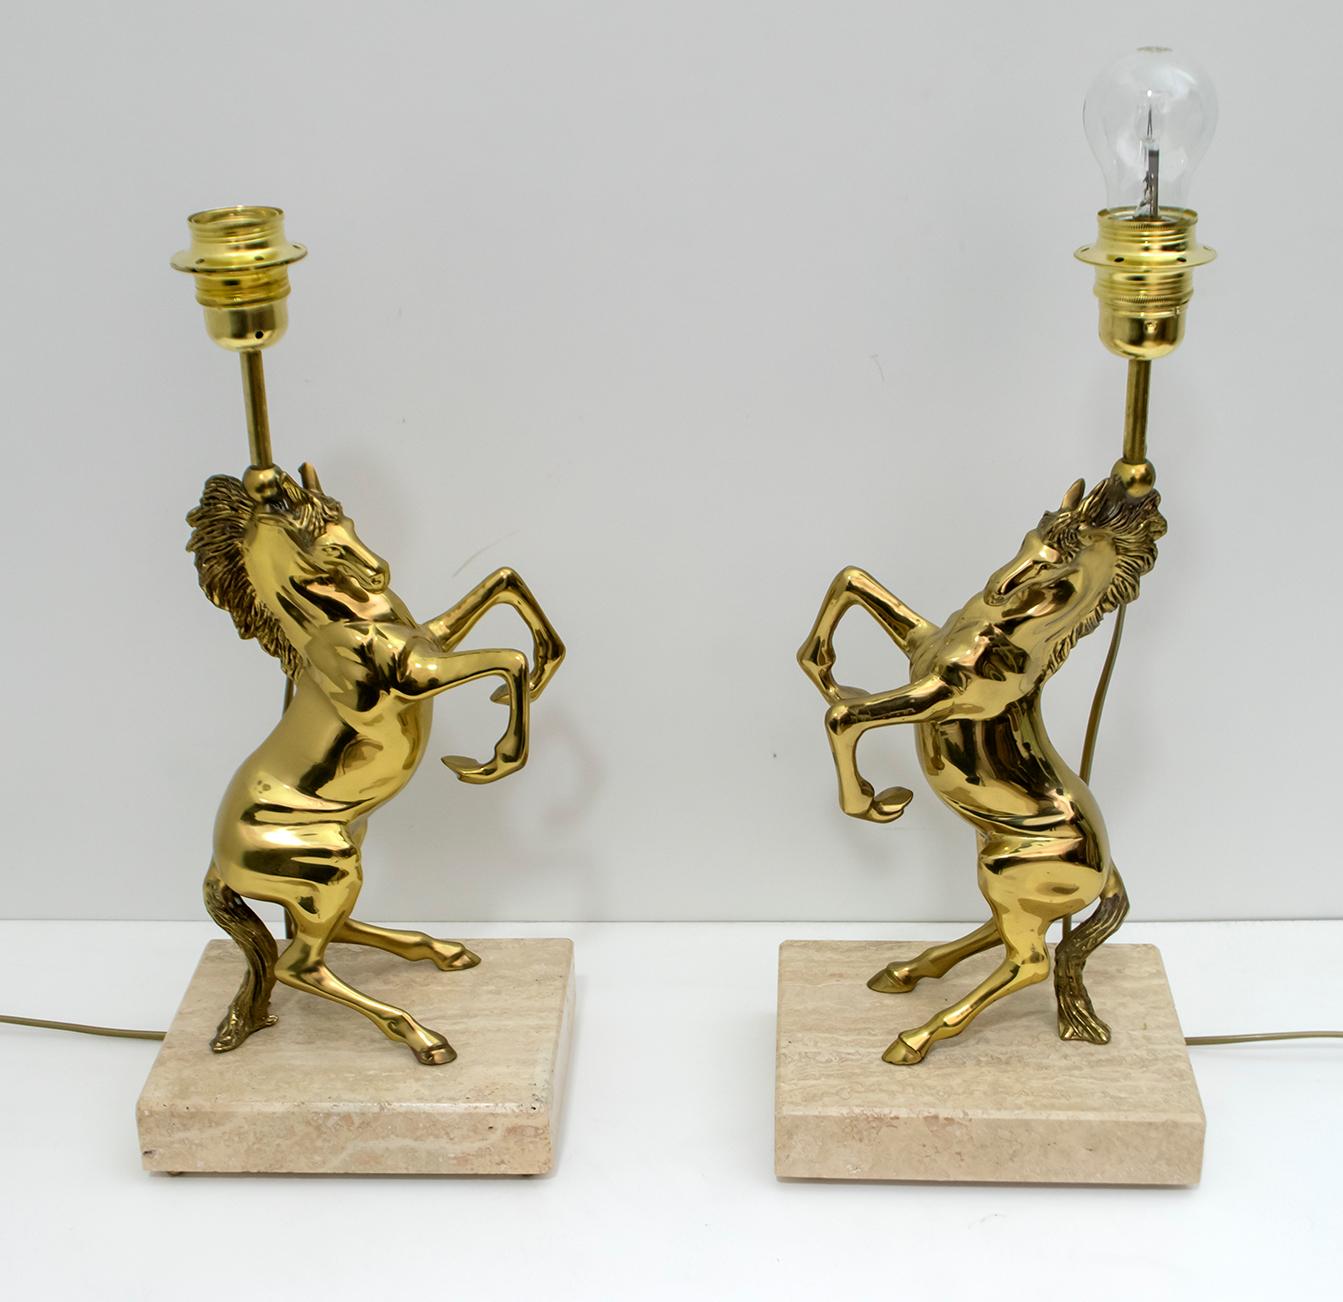 Cette paire de lampes françaises a été produite dans les années 1970 et attribuée à la Maison Charles.
Les lampes, deux chevaux en laiton poli, reposent sur une base en travertin et des pieds en laiton.